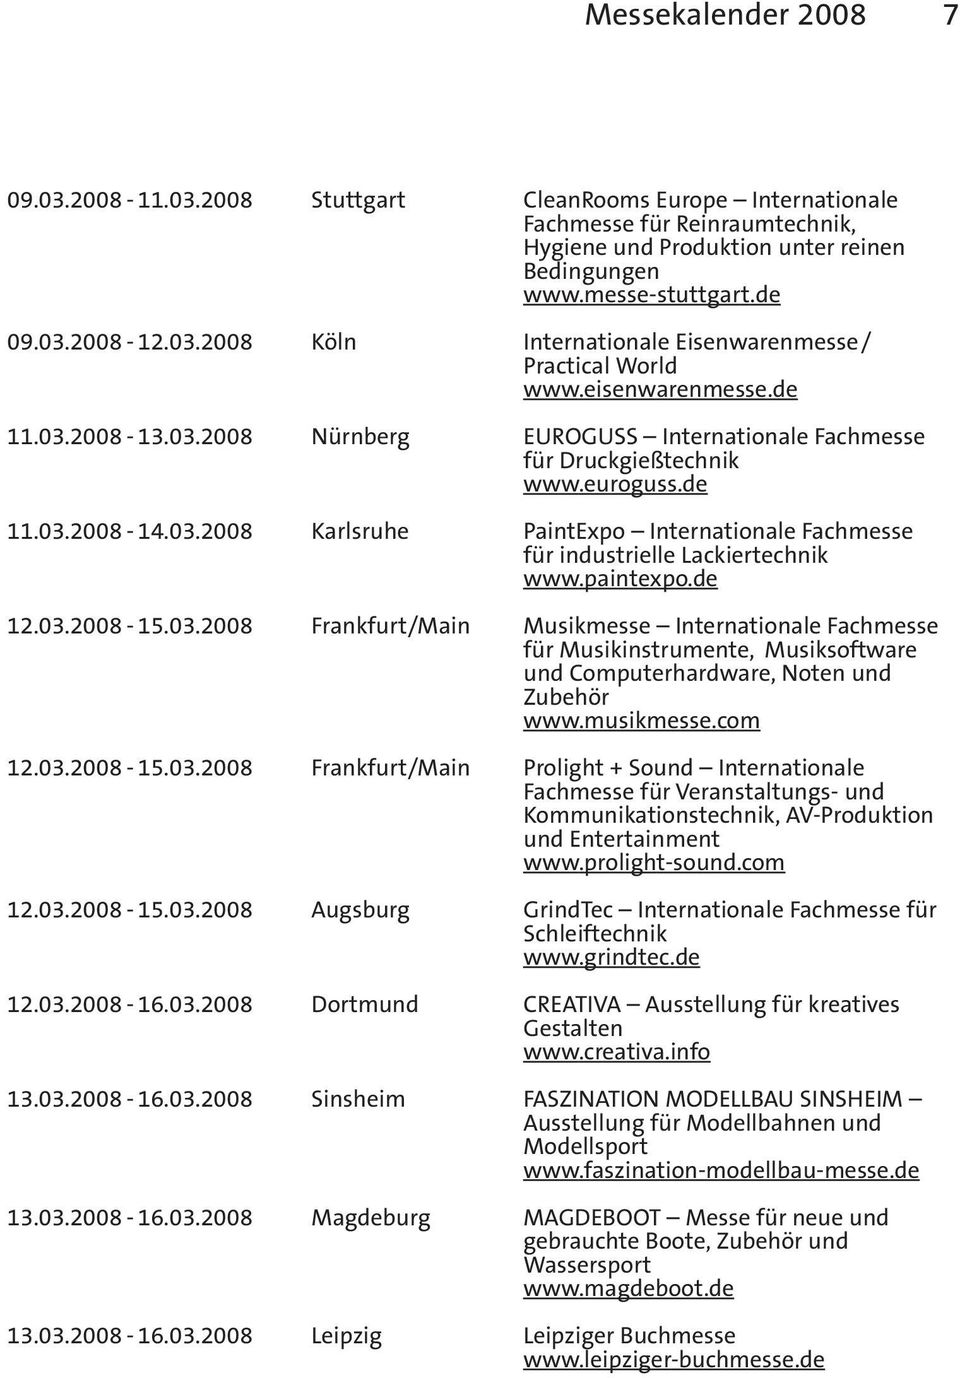 03.2008 Karlsruhe PaintExpo Internationale Fachmesse für industrielle Lackiertechnik www.paintexpo.de 12.03.2008-15.03.2008 Frankfurt/Main Musikmesse Internationale Fachmesse für Musikinstrumente, Musiksoftware und Computerhardware, Noten und Zubehör www.